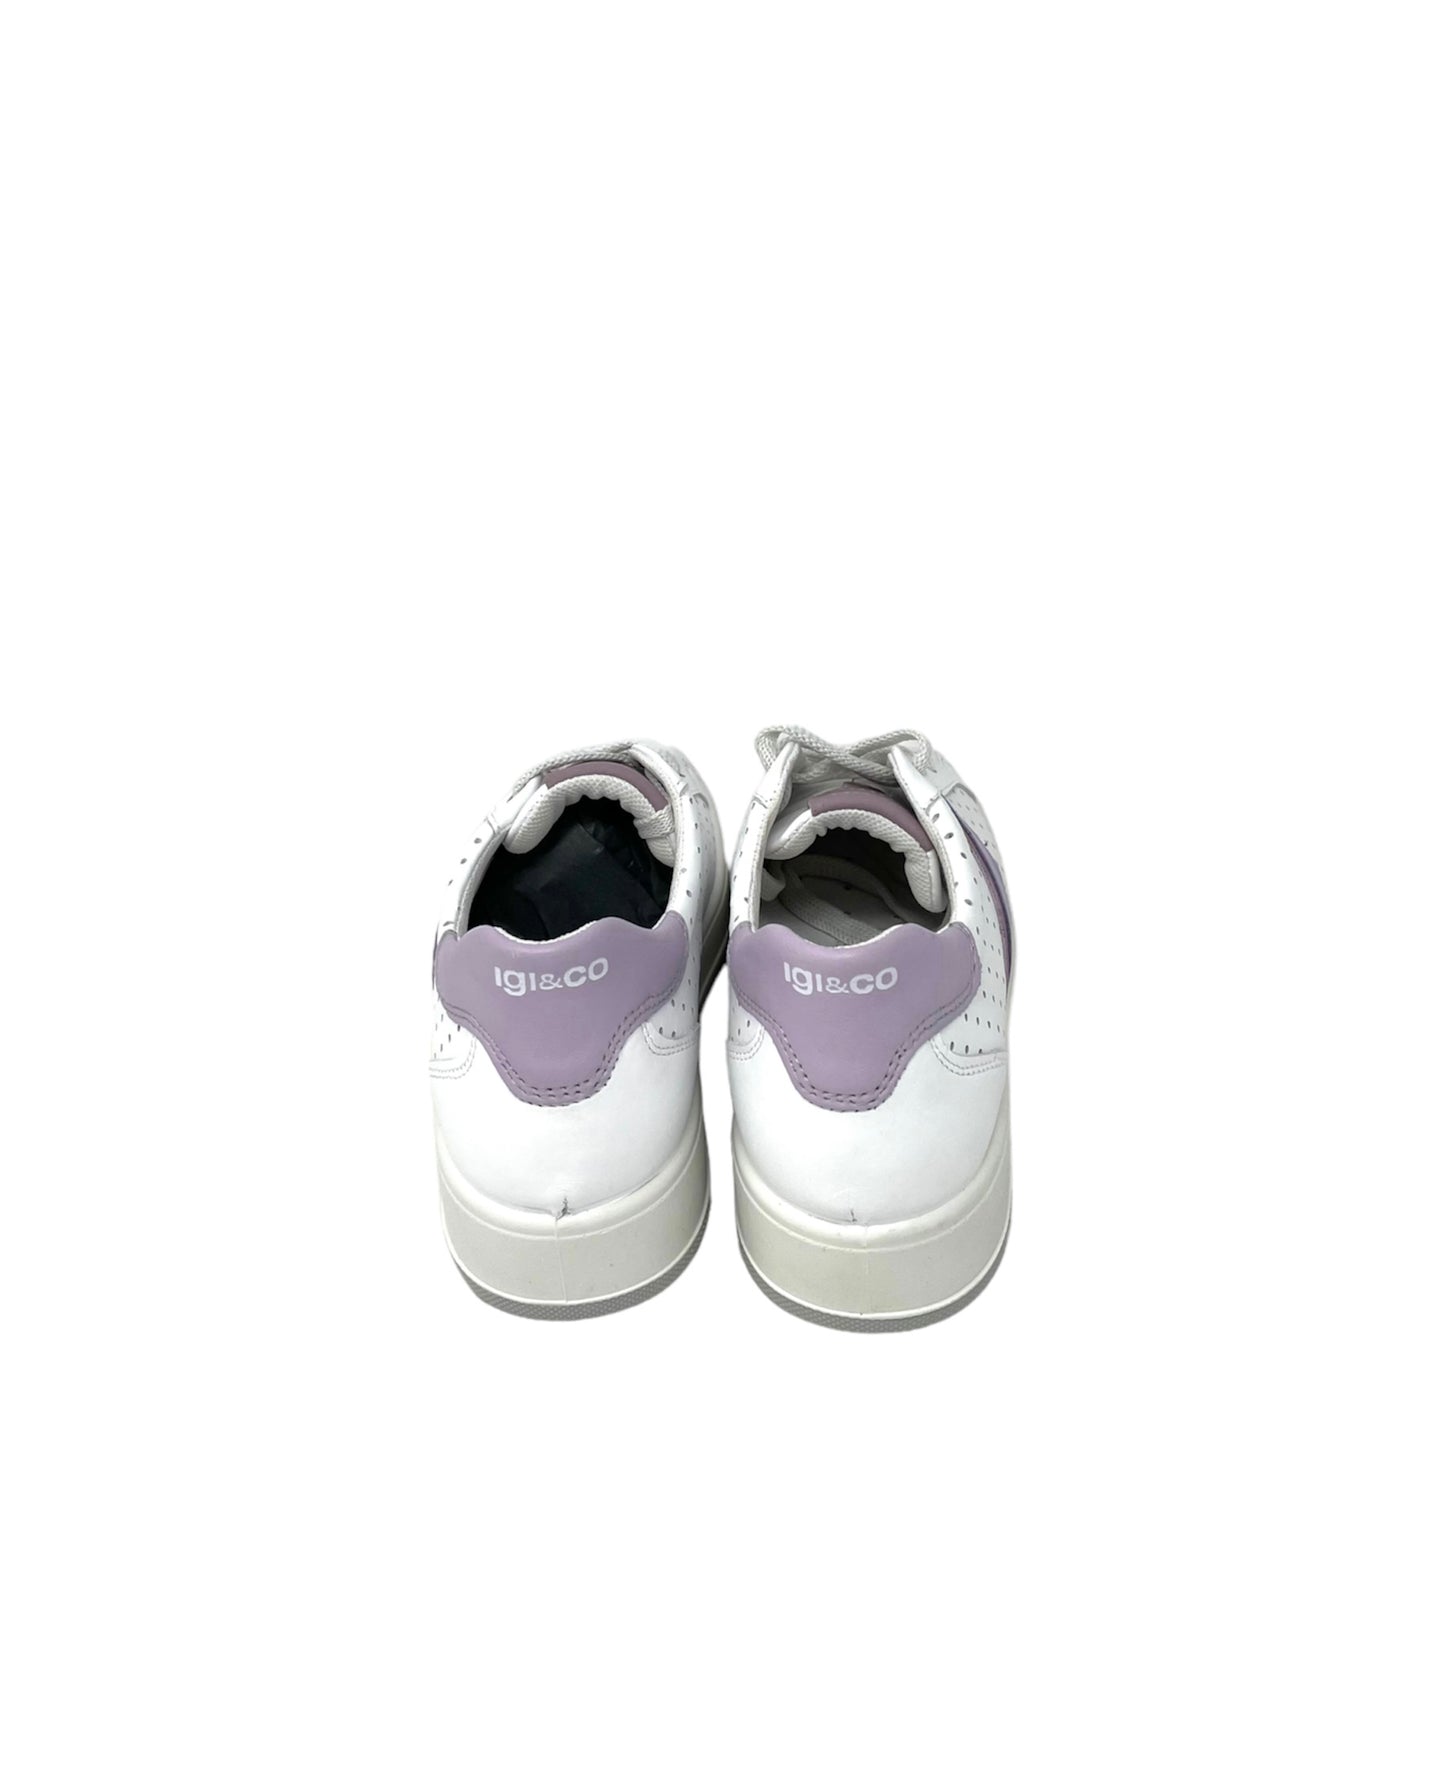 Sneakers Ava fondo traforato nappa bianco viola -3657022